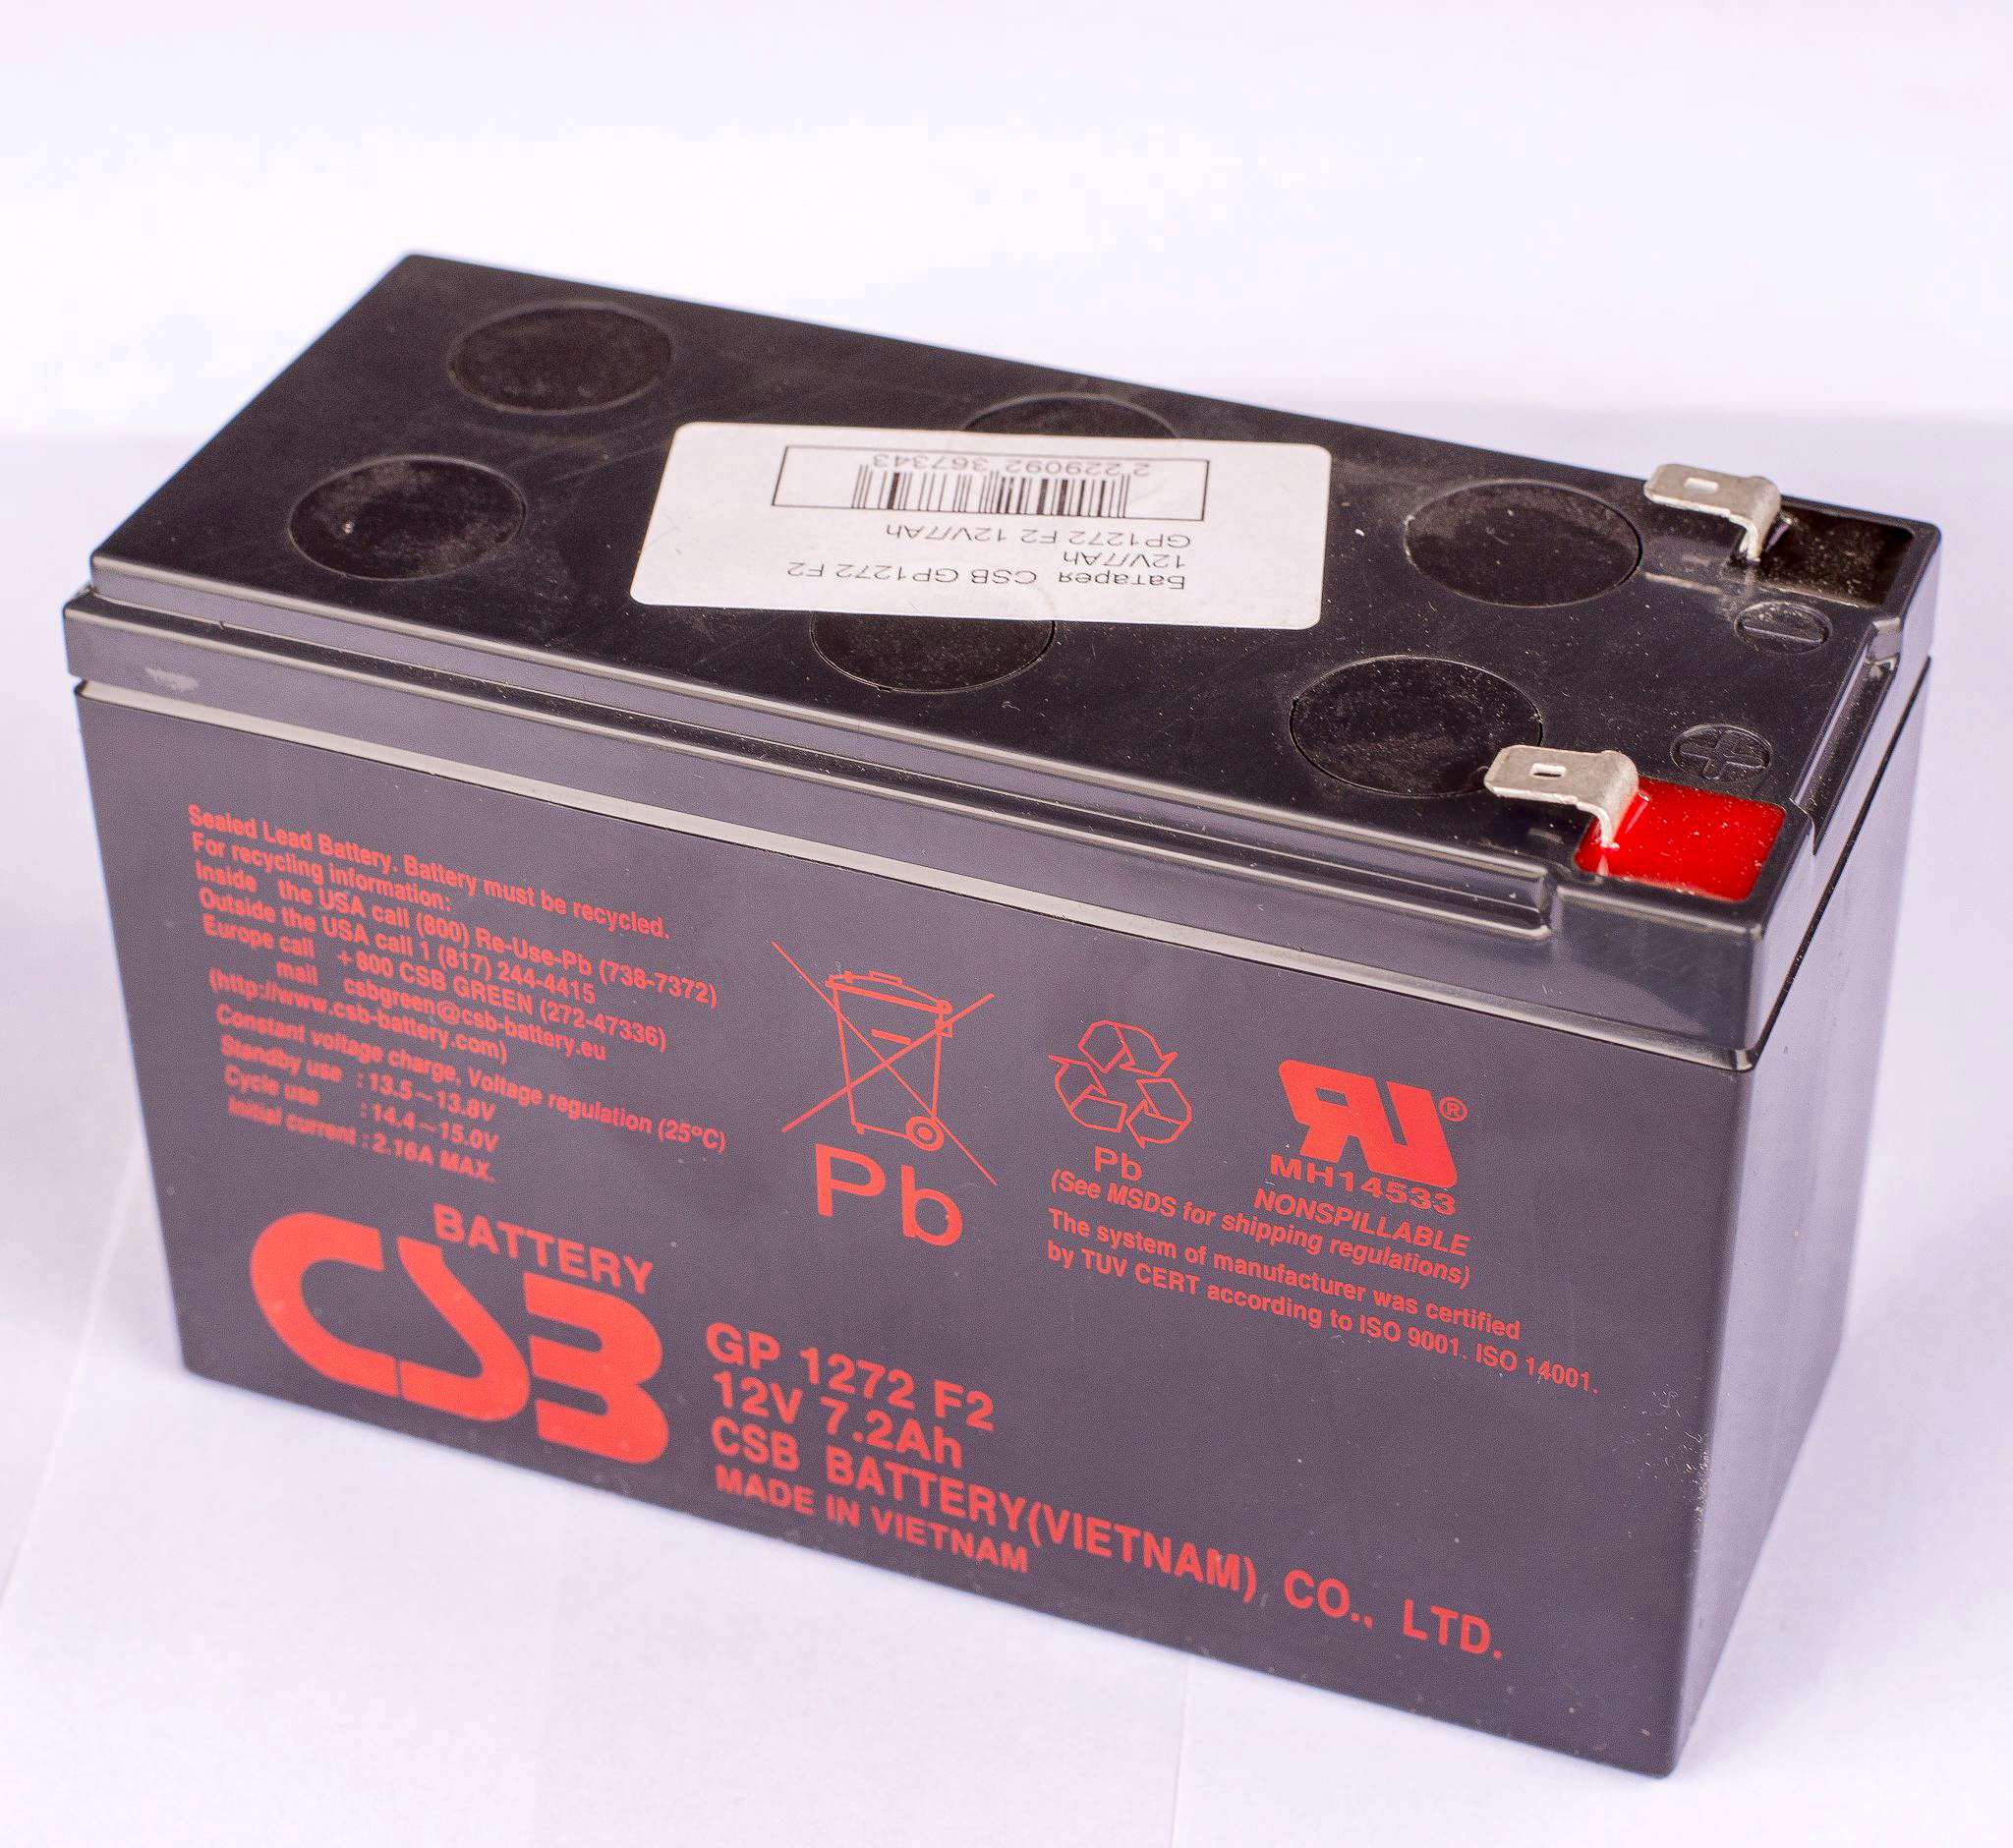 Gp1272 12v. Аккумуляторная батарея для ИБП CSB GP 1272 f2 12v 7.2Ah. Аккумуляторная батарея CSB gp1272 f2. Батарея аккумуляторная CSB GP 1272 f2 12в 7.2а/ч. Батарея аккумуляторная CSB gp1272 (12v/7.2Ah).